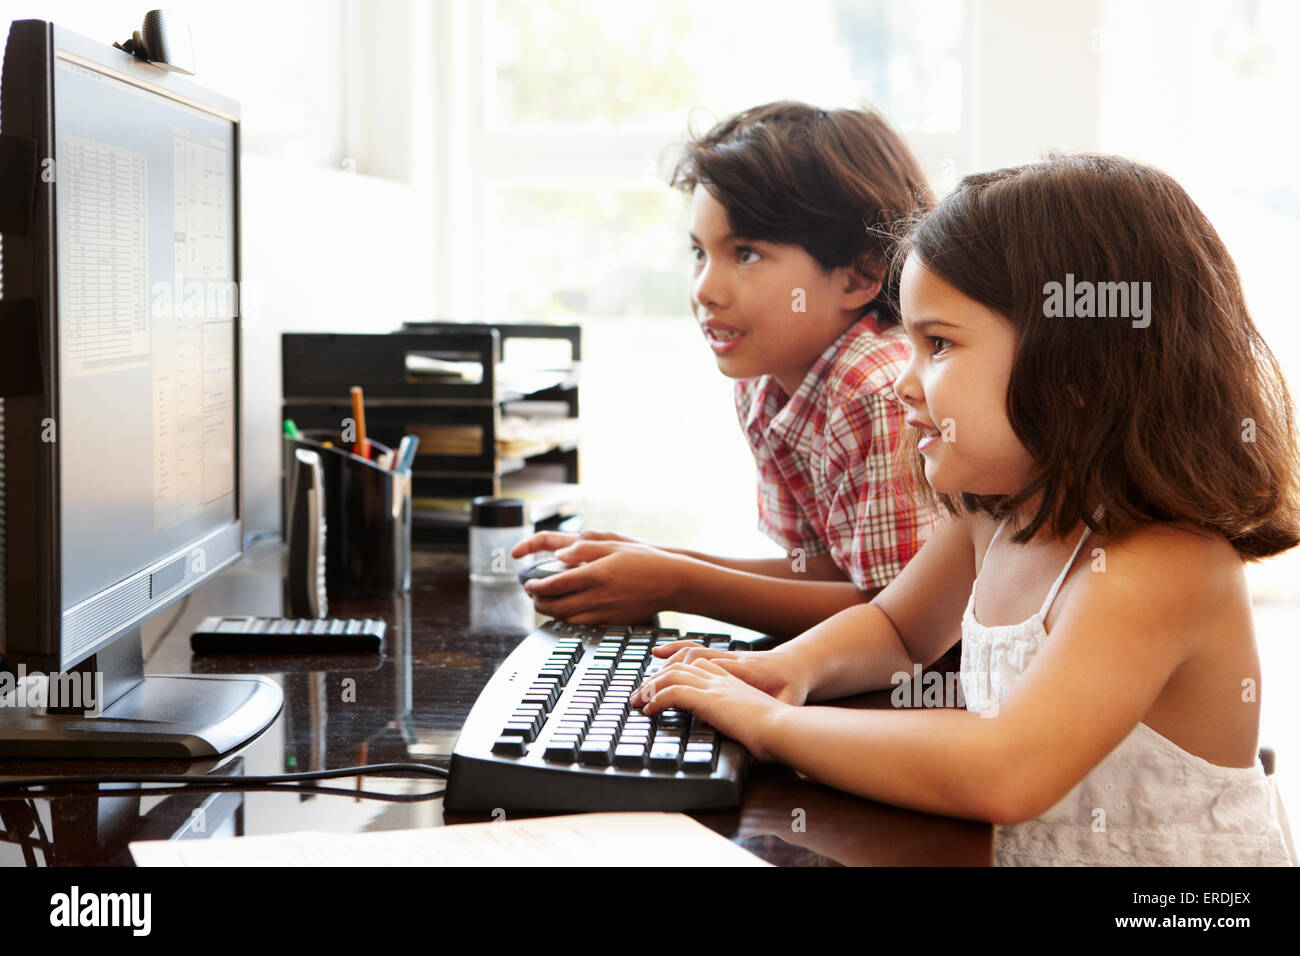 Hispanic children using computer at home Stock Photo